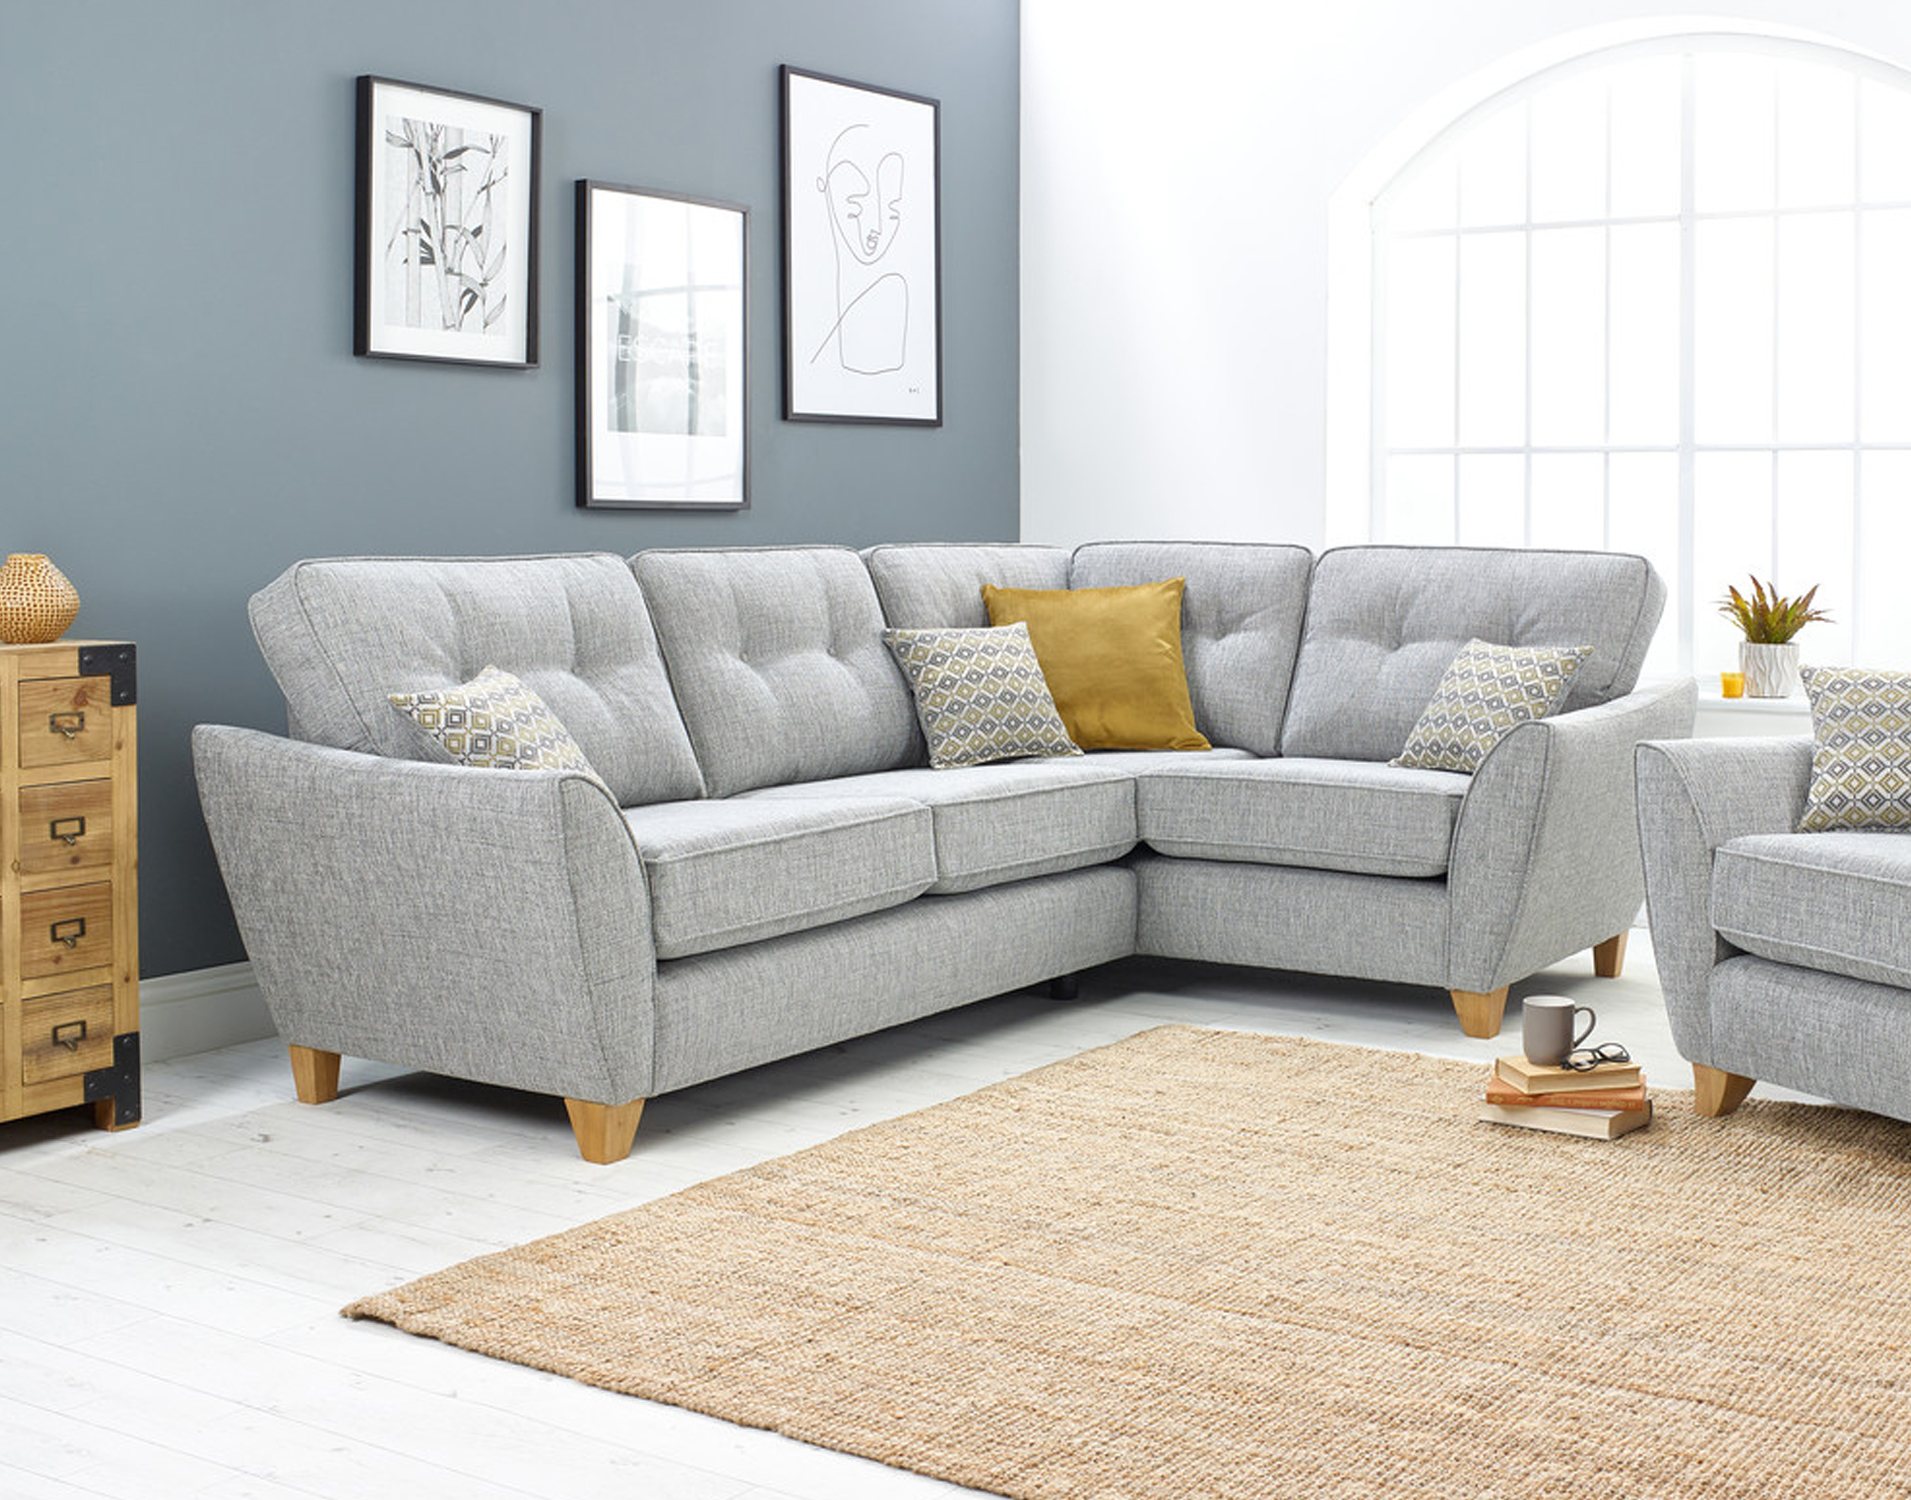 Best Corner Sofa For Small Living Room